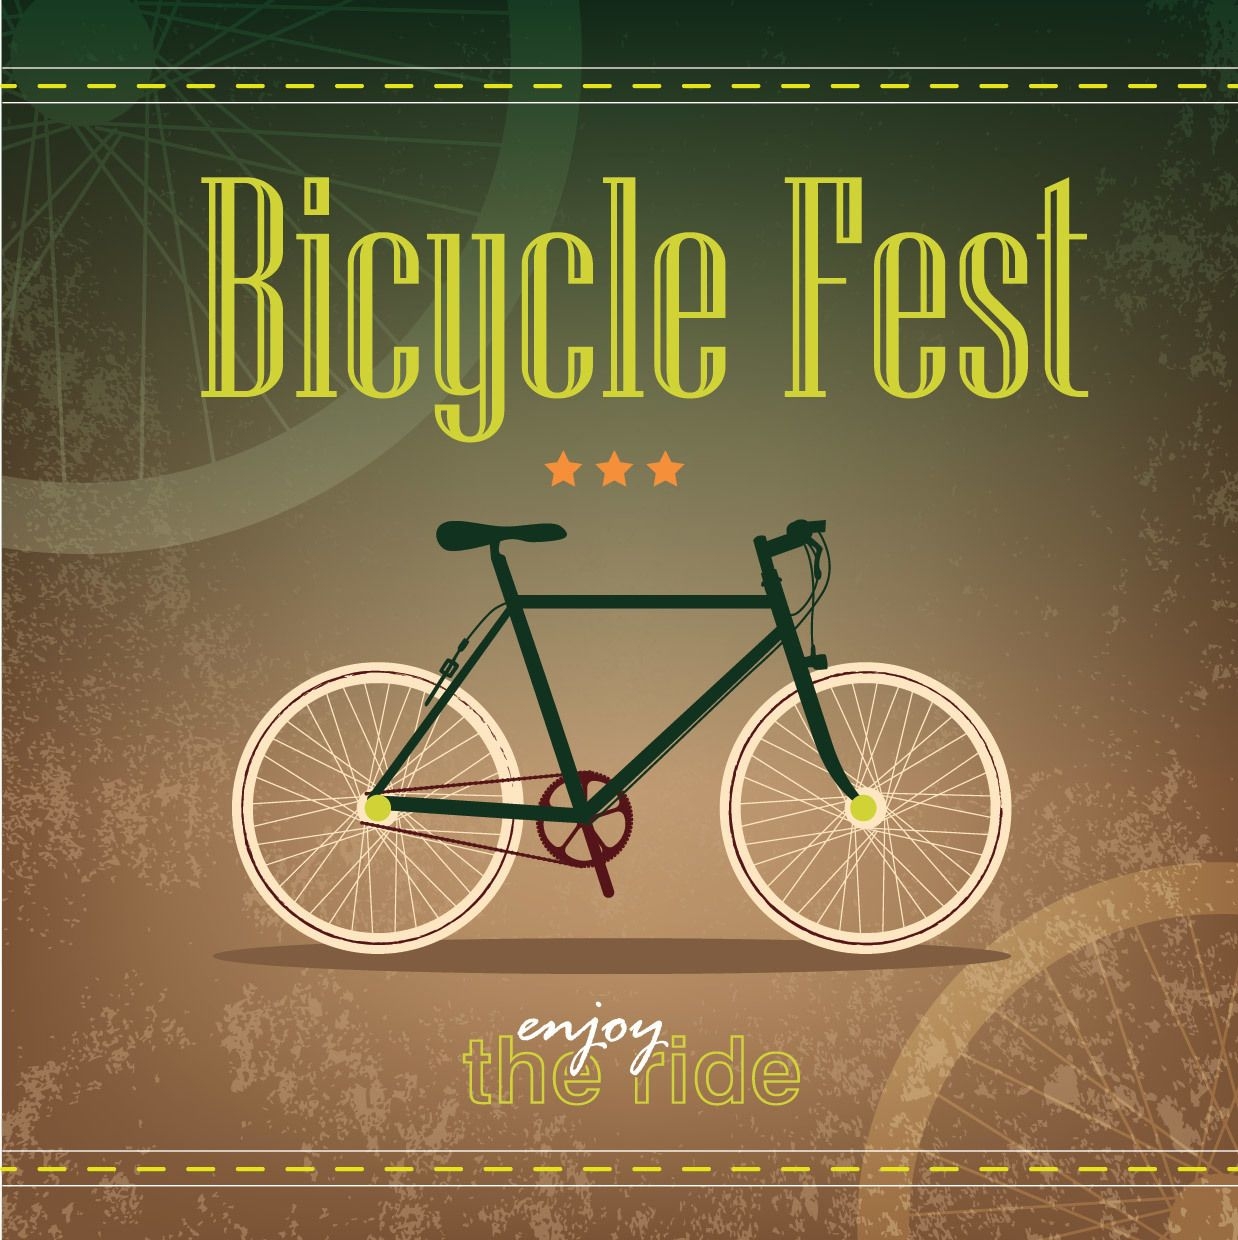 Plantilla de póster retro Grungy Bicycle Fest